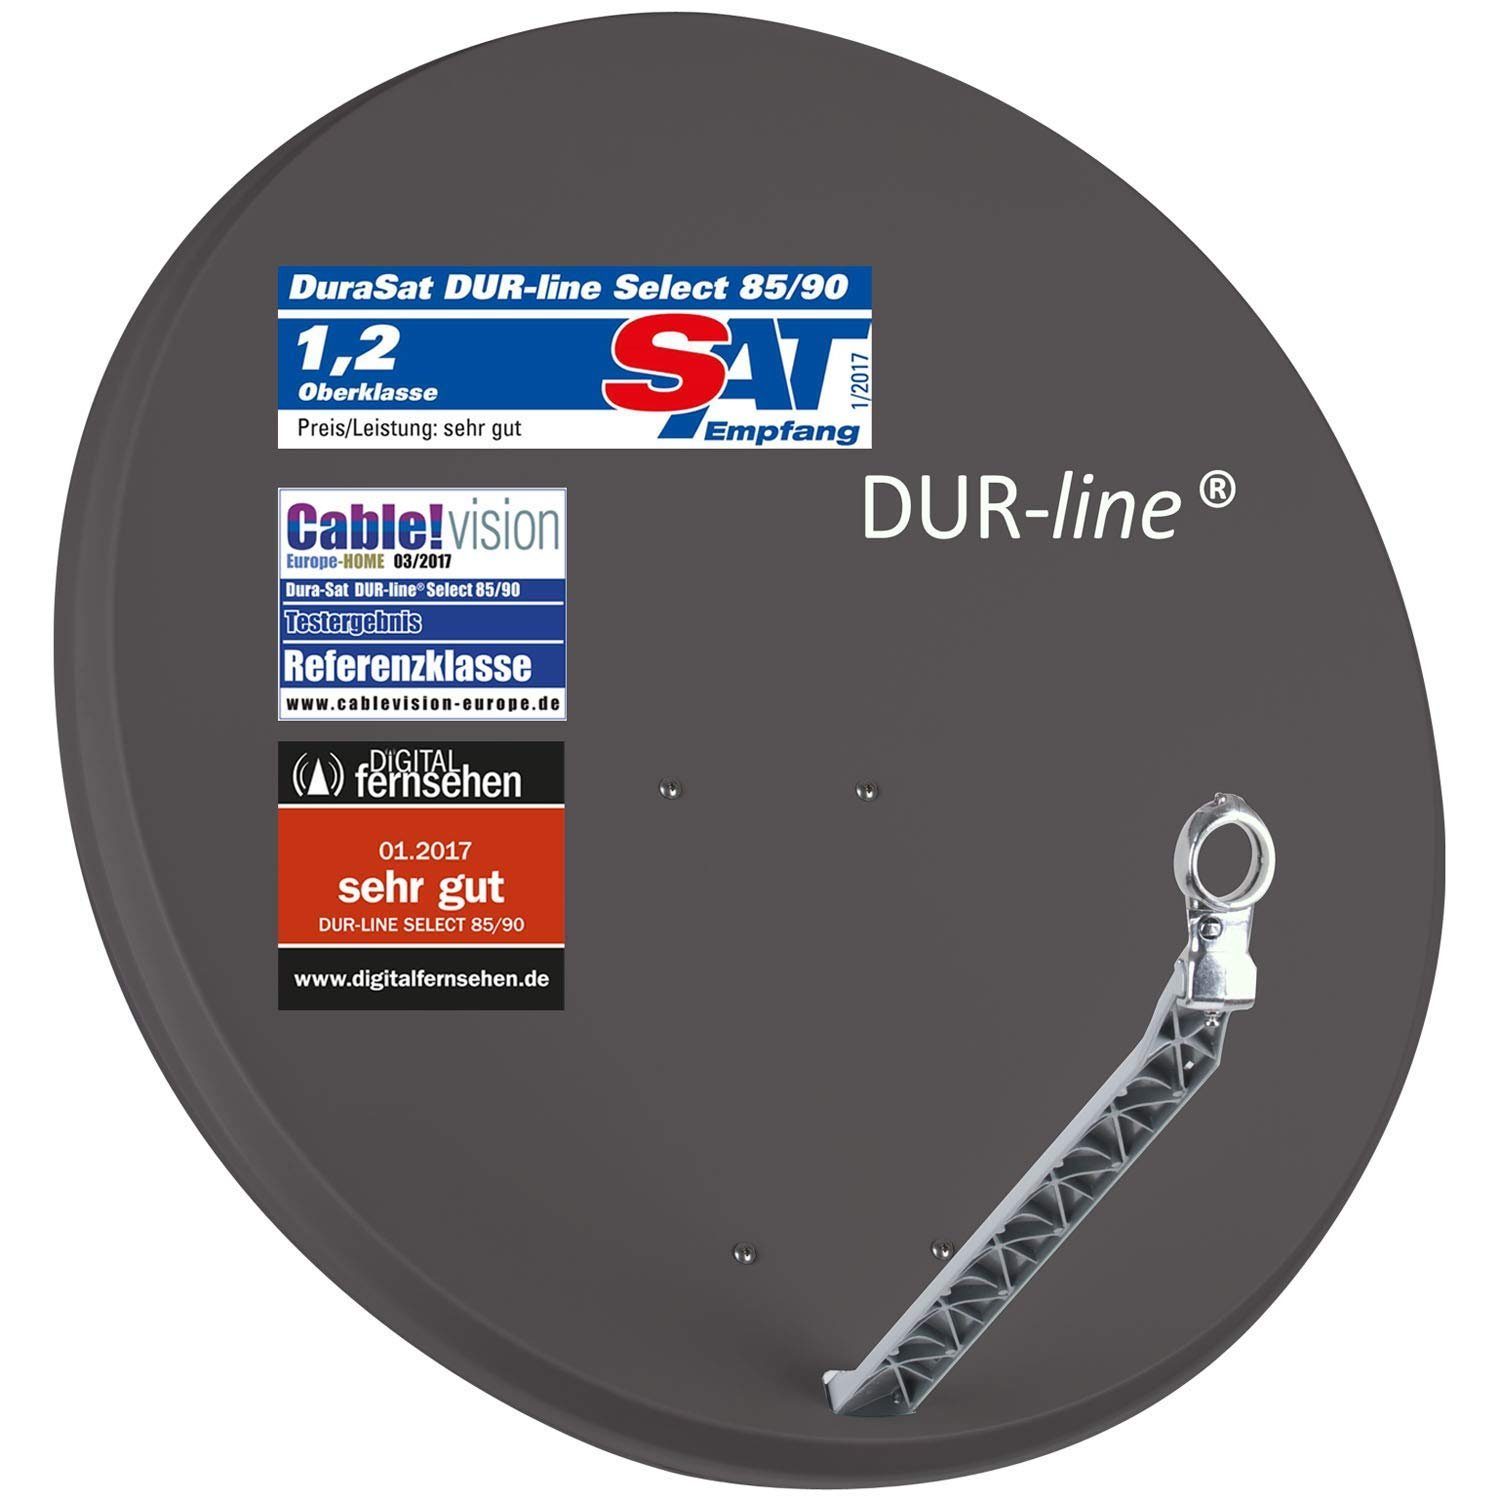 DUR-line DUR-line Select 85/90cm Anthrazit Satelliten-Schüssel - 3 x Test + Sat-Spiegel